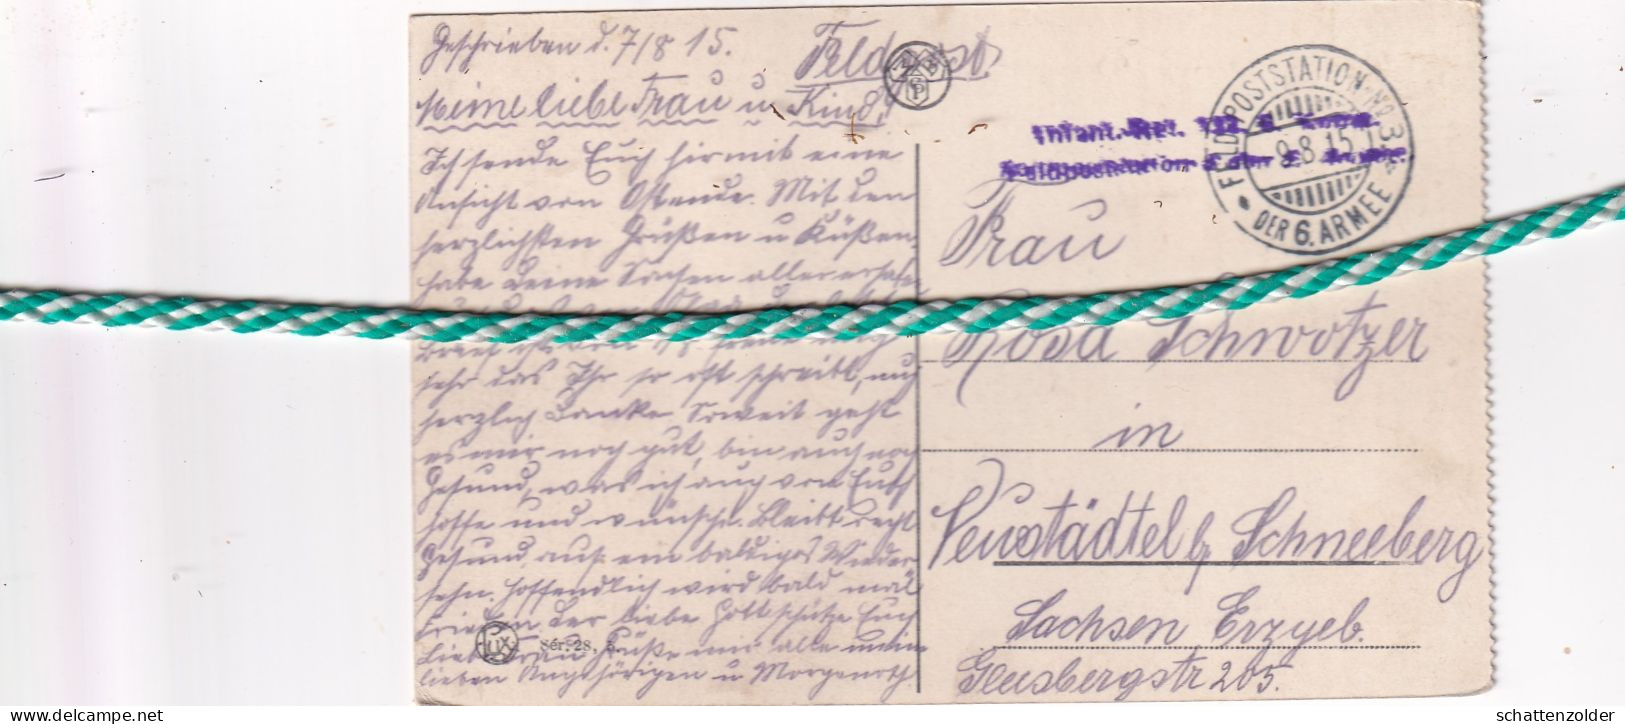 Oostende, Ostende, Vue Dans Le Parc Avec La Poste, Feldpost, Veldpost, 1915, Colorisé - Oostende